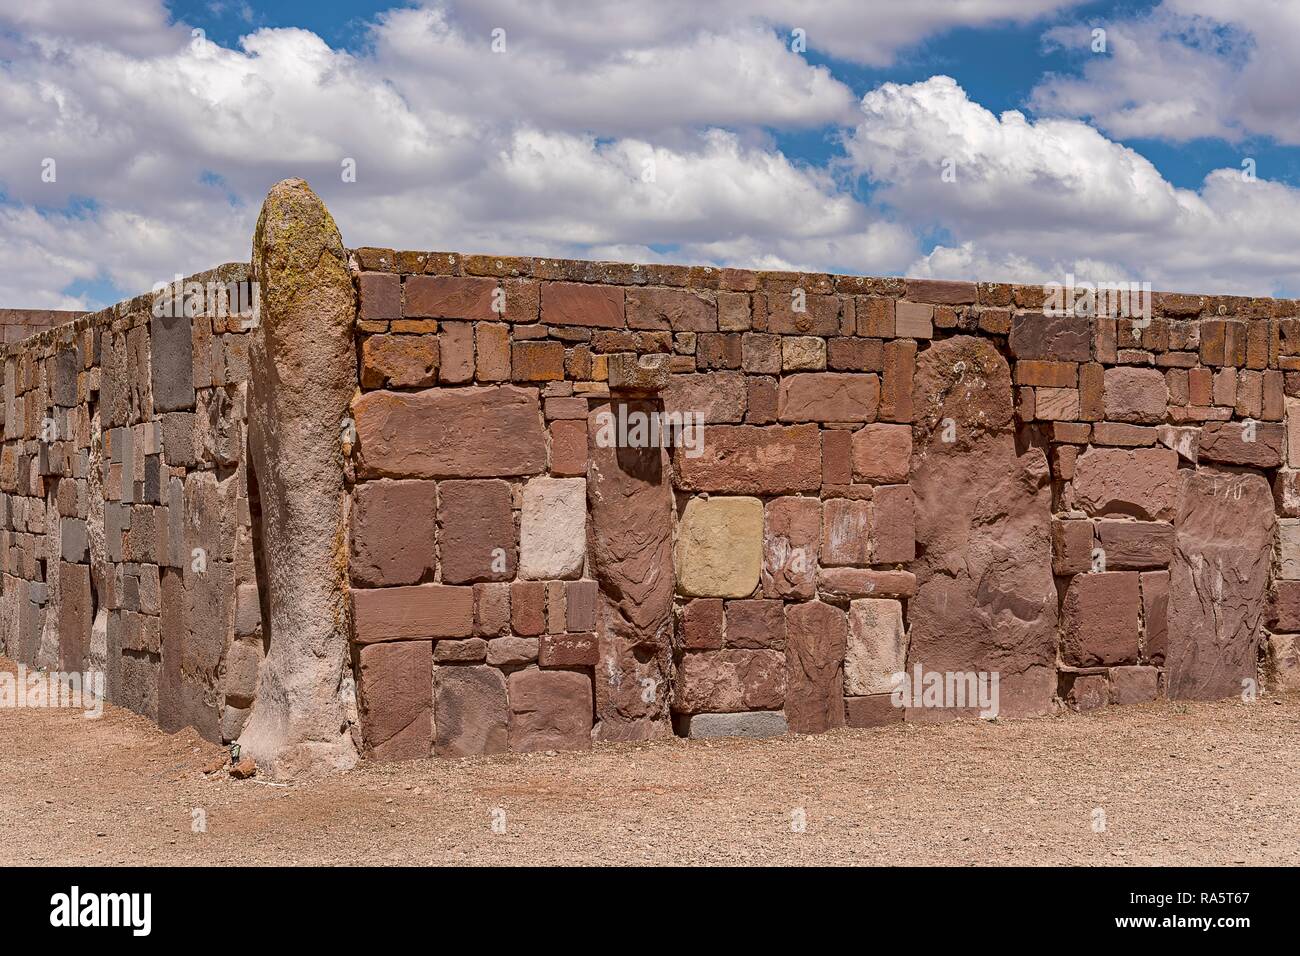 La pared exterior del templo de Kalasasaya (lugar de las piedras) con la esquina del monolito de la época pre-Inca, Tihuanaku Foto de stock